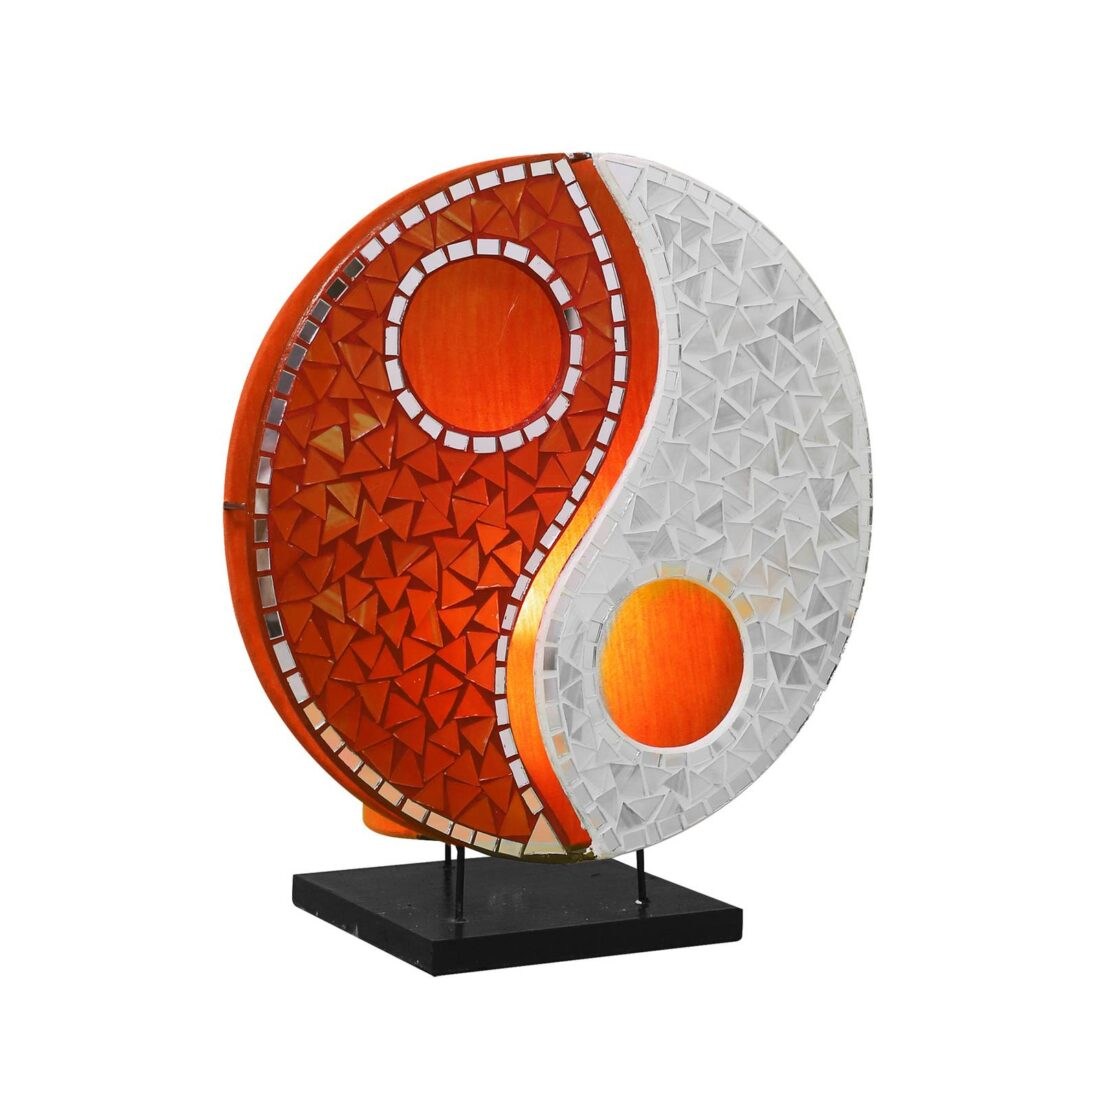 Woru Skleněná mozaiková stolní lampa Ying Yang oranžová/bílá